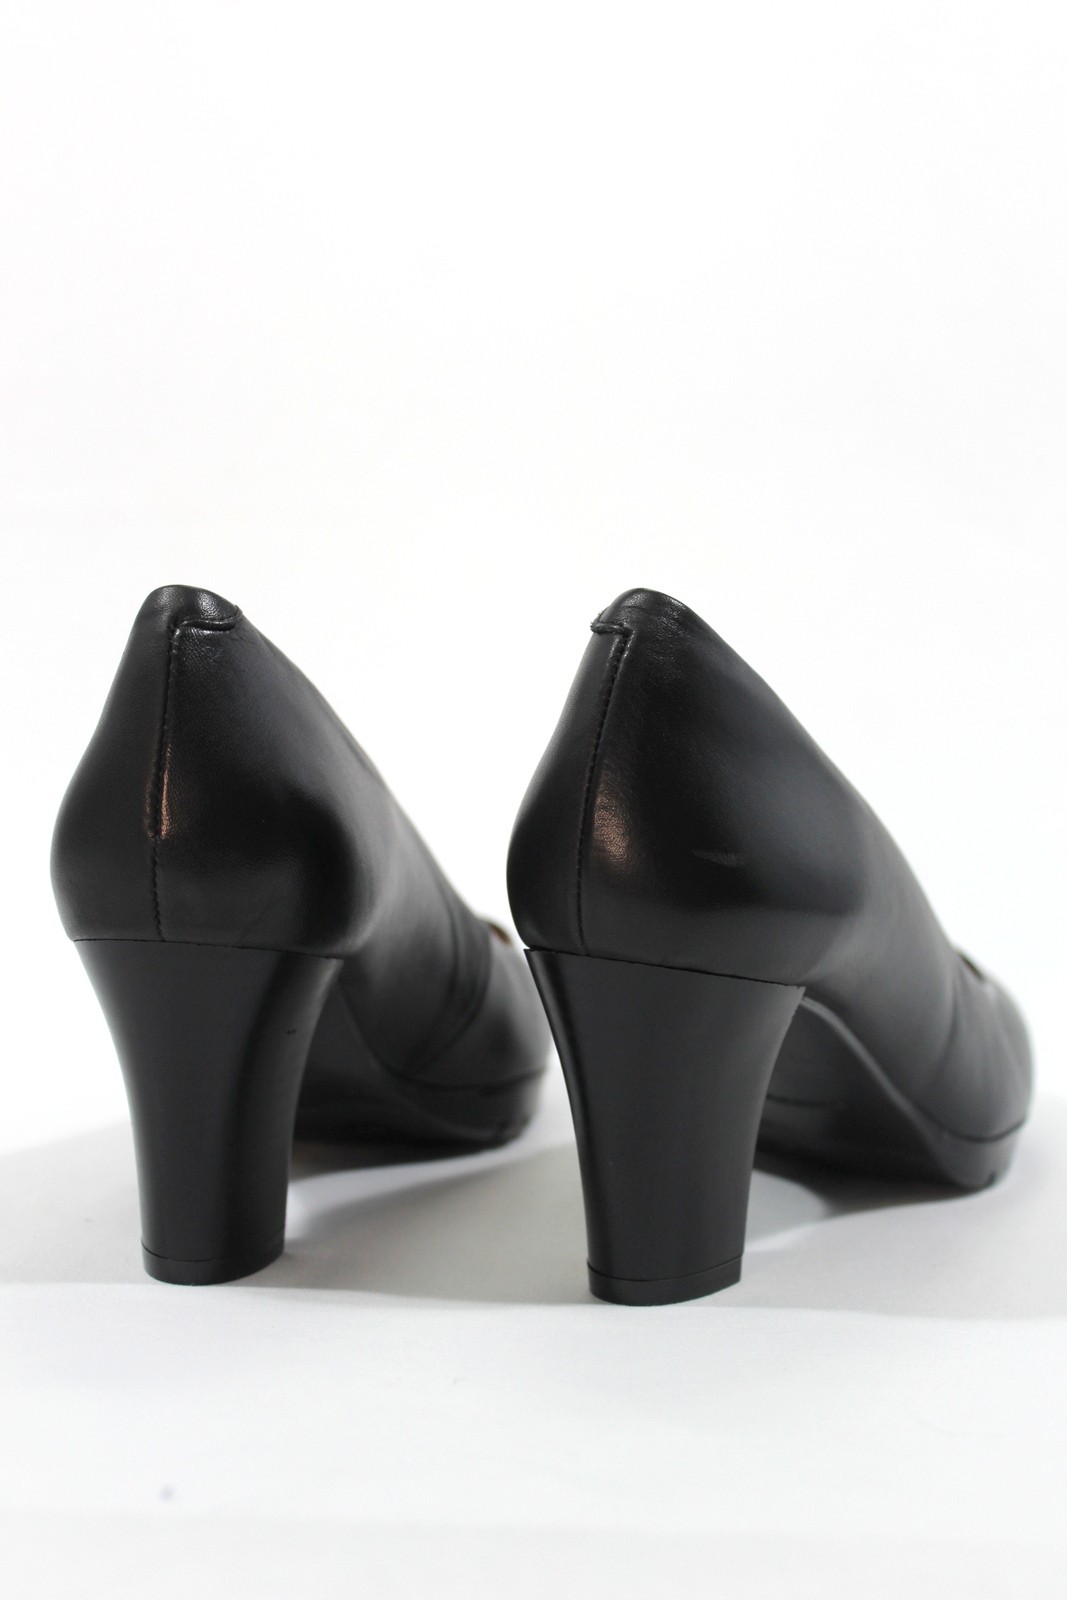 cilindro pecador vertical DESIREÉ - Zapato salón piel confortable, tacón ancho 5 cm. Negro.Desireé|  Calzados Losada